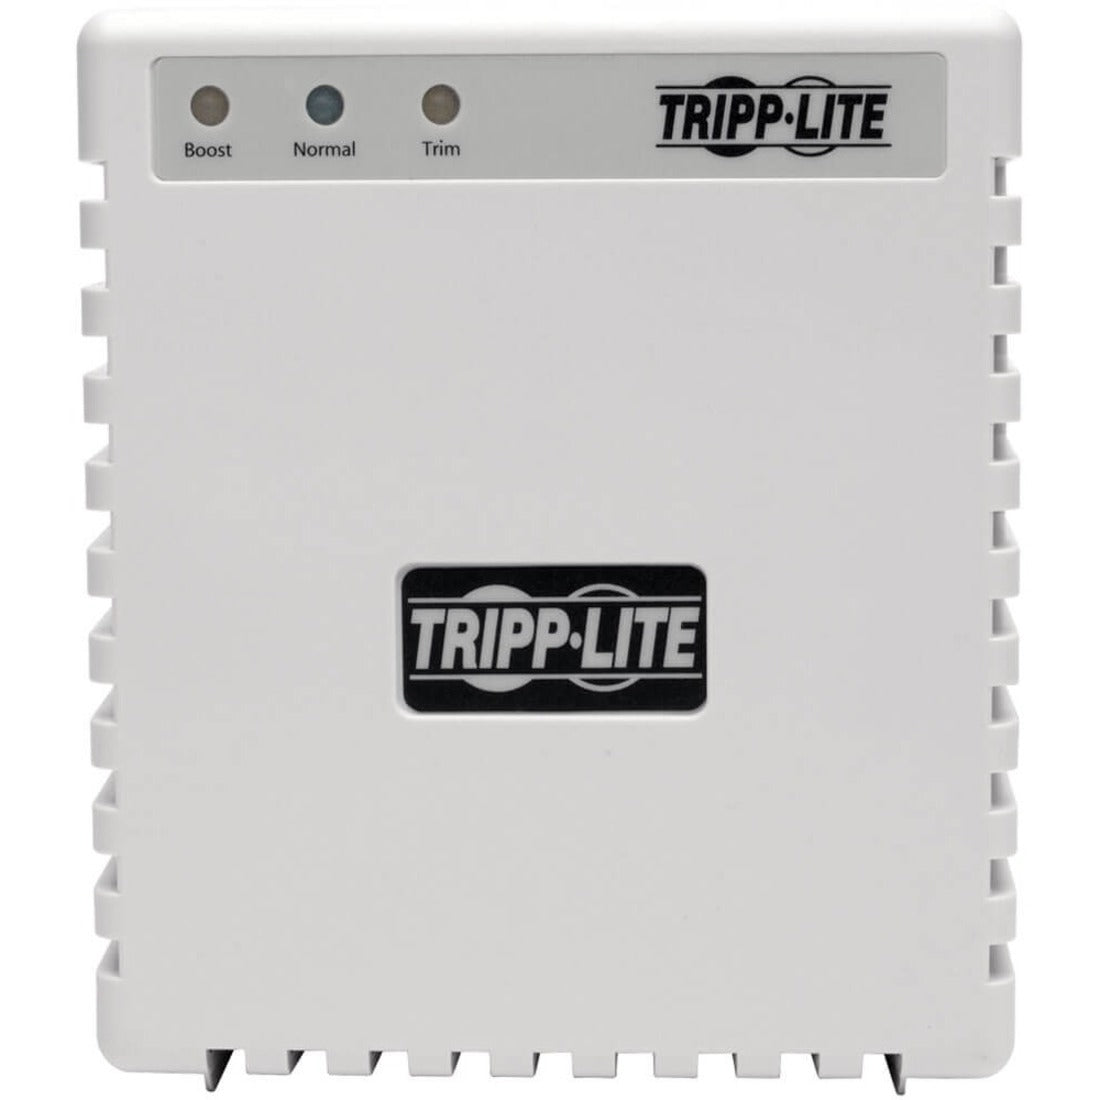 Tripp Lite LS606M Line Conditioner, 600W 120V Power Conditioner, Voltage Regulation, Surge Protection